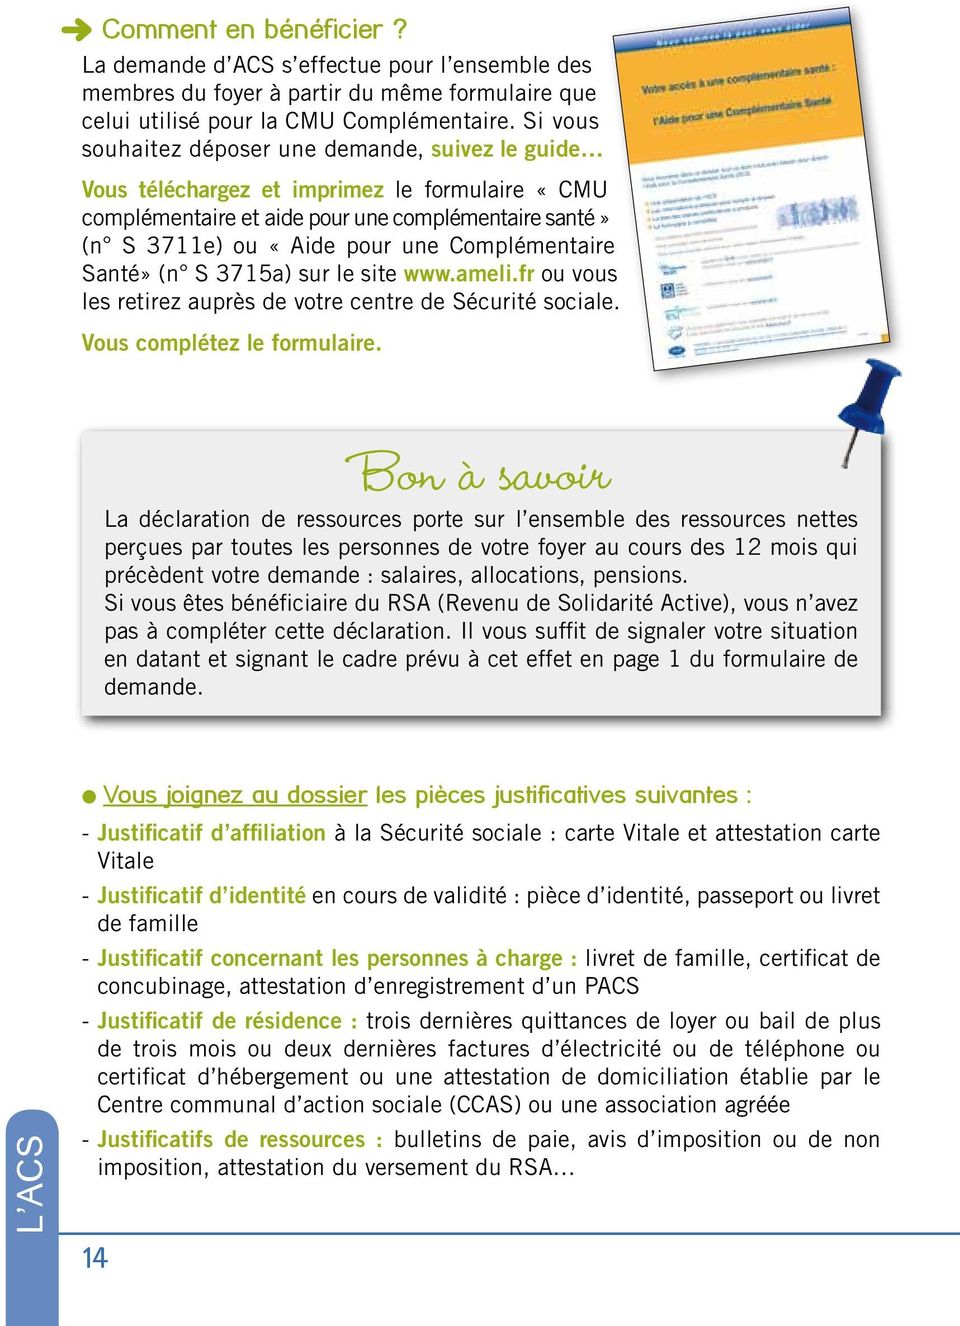 Complémentaire Santé» (n S 3715a) sur le site www.ameli.fr ou vous les retirez auprès de votre centre de Sécurité sociale. Vous complétez le formulaire.